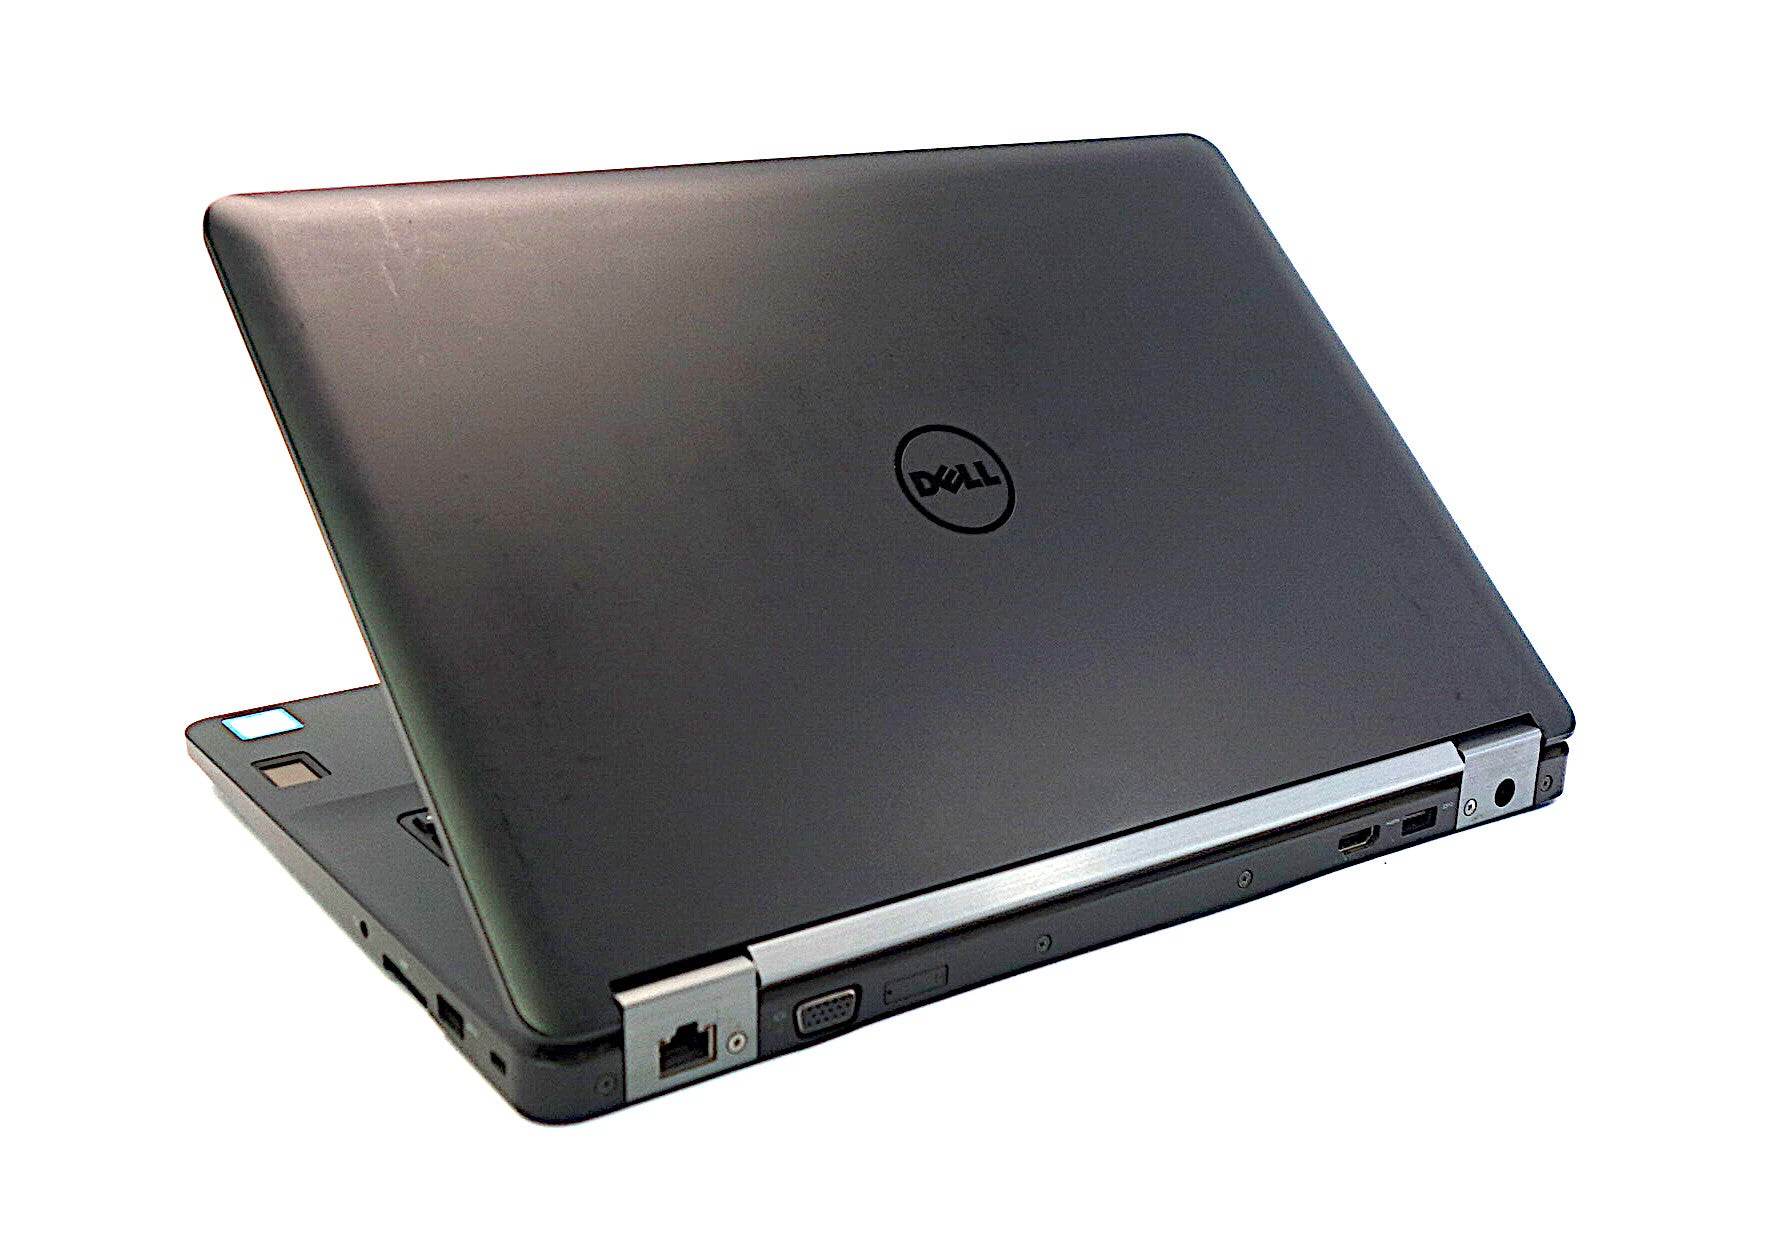 Dell Latitude E5470 Laptop, 14" Touch i5 6th Gen, 8GB RAM, 240GB SSD